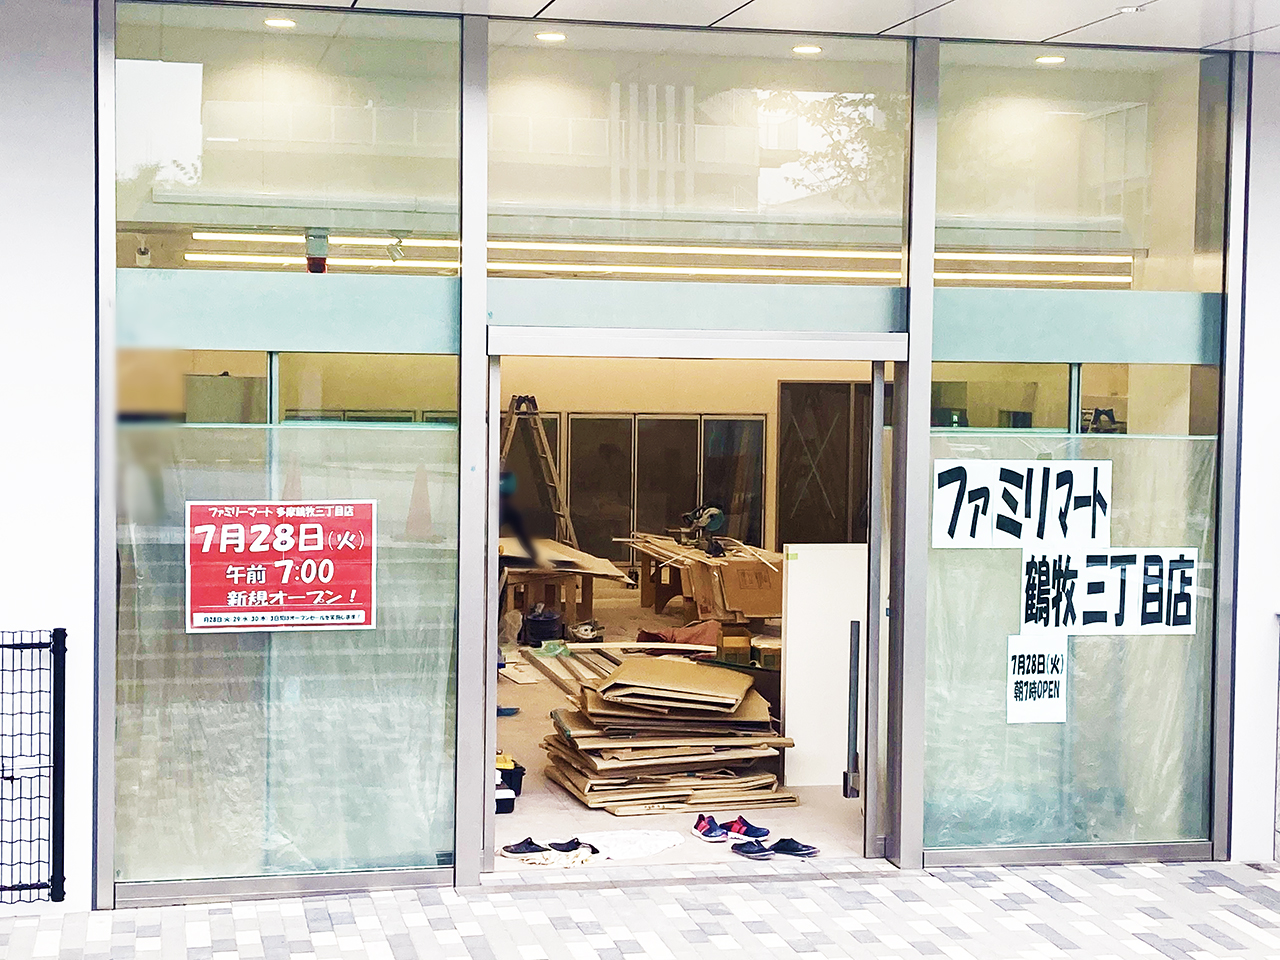 ファミリーマート鶴巻三丁目店が7月28日に新規オープン